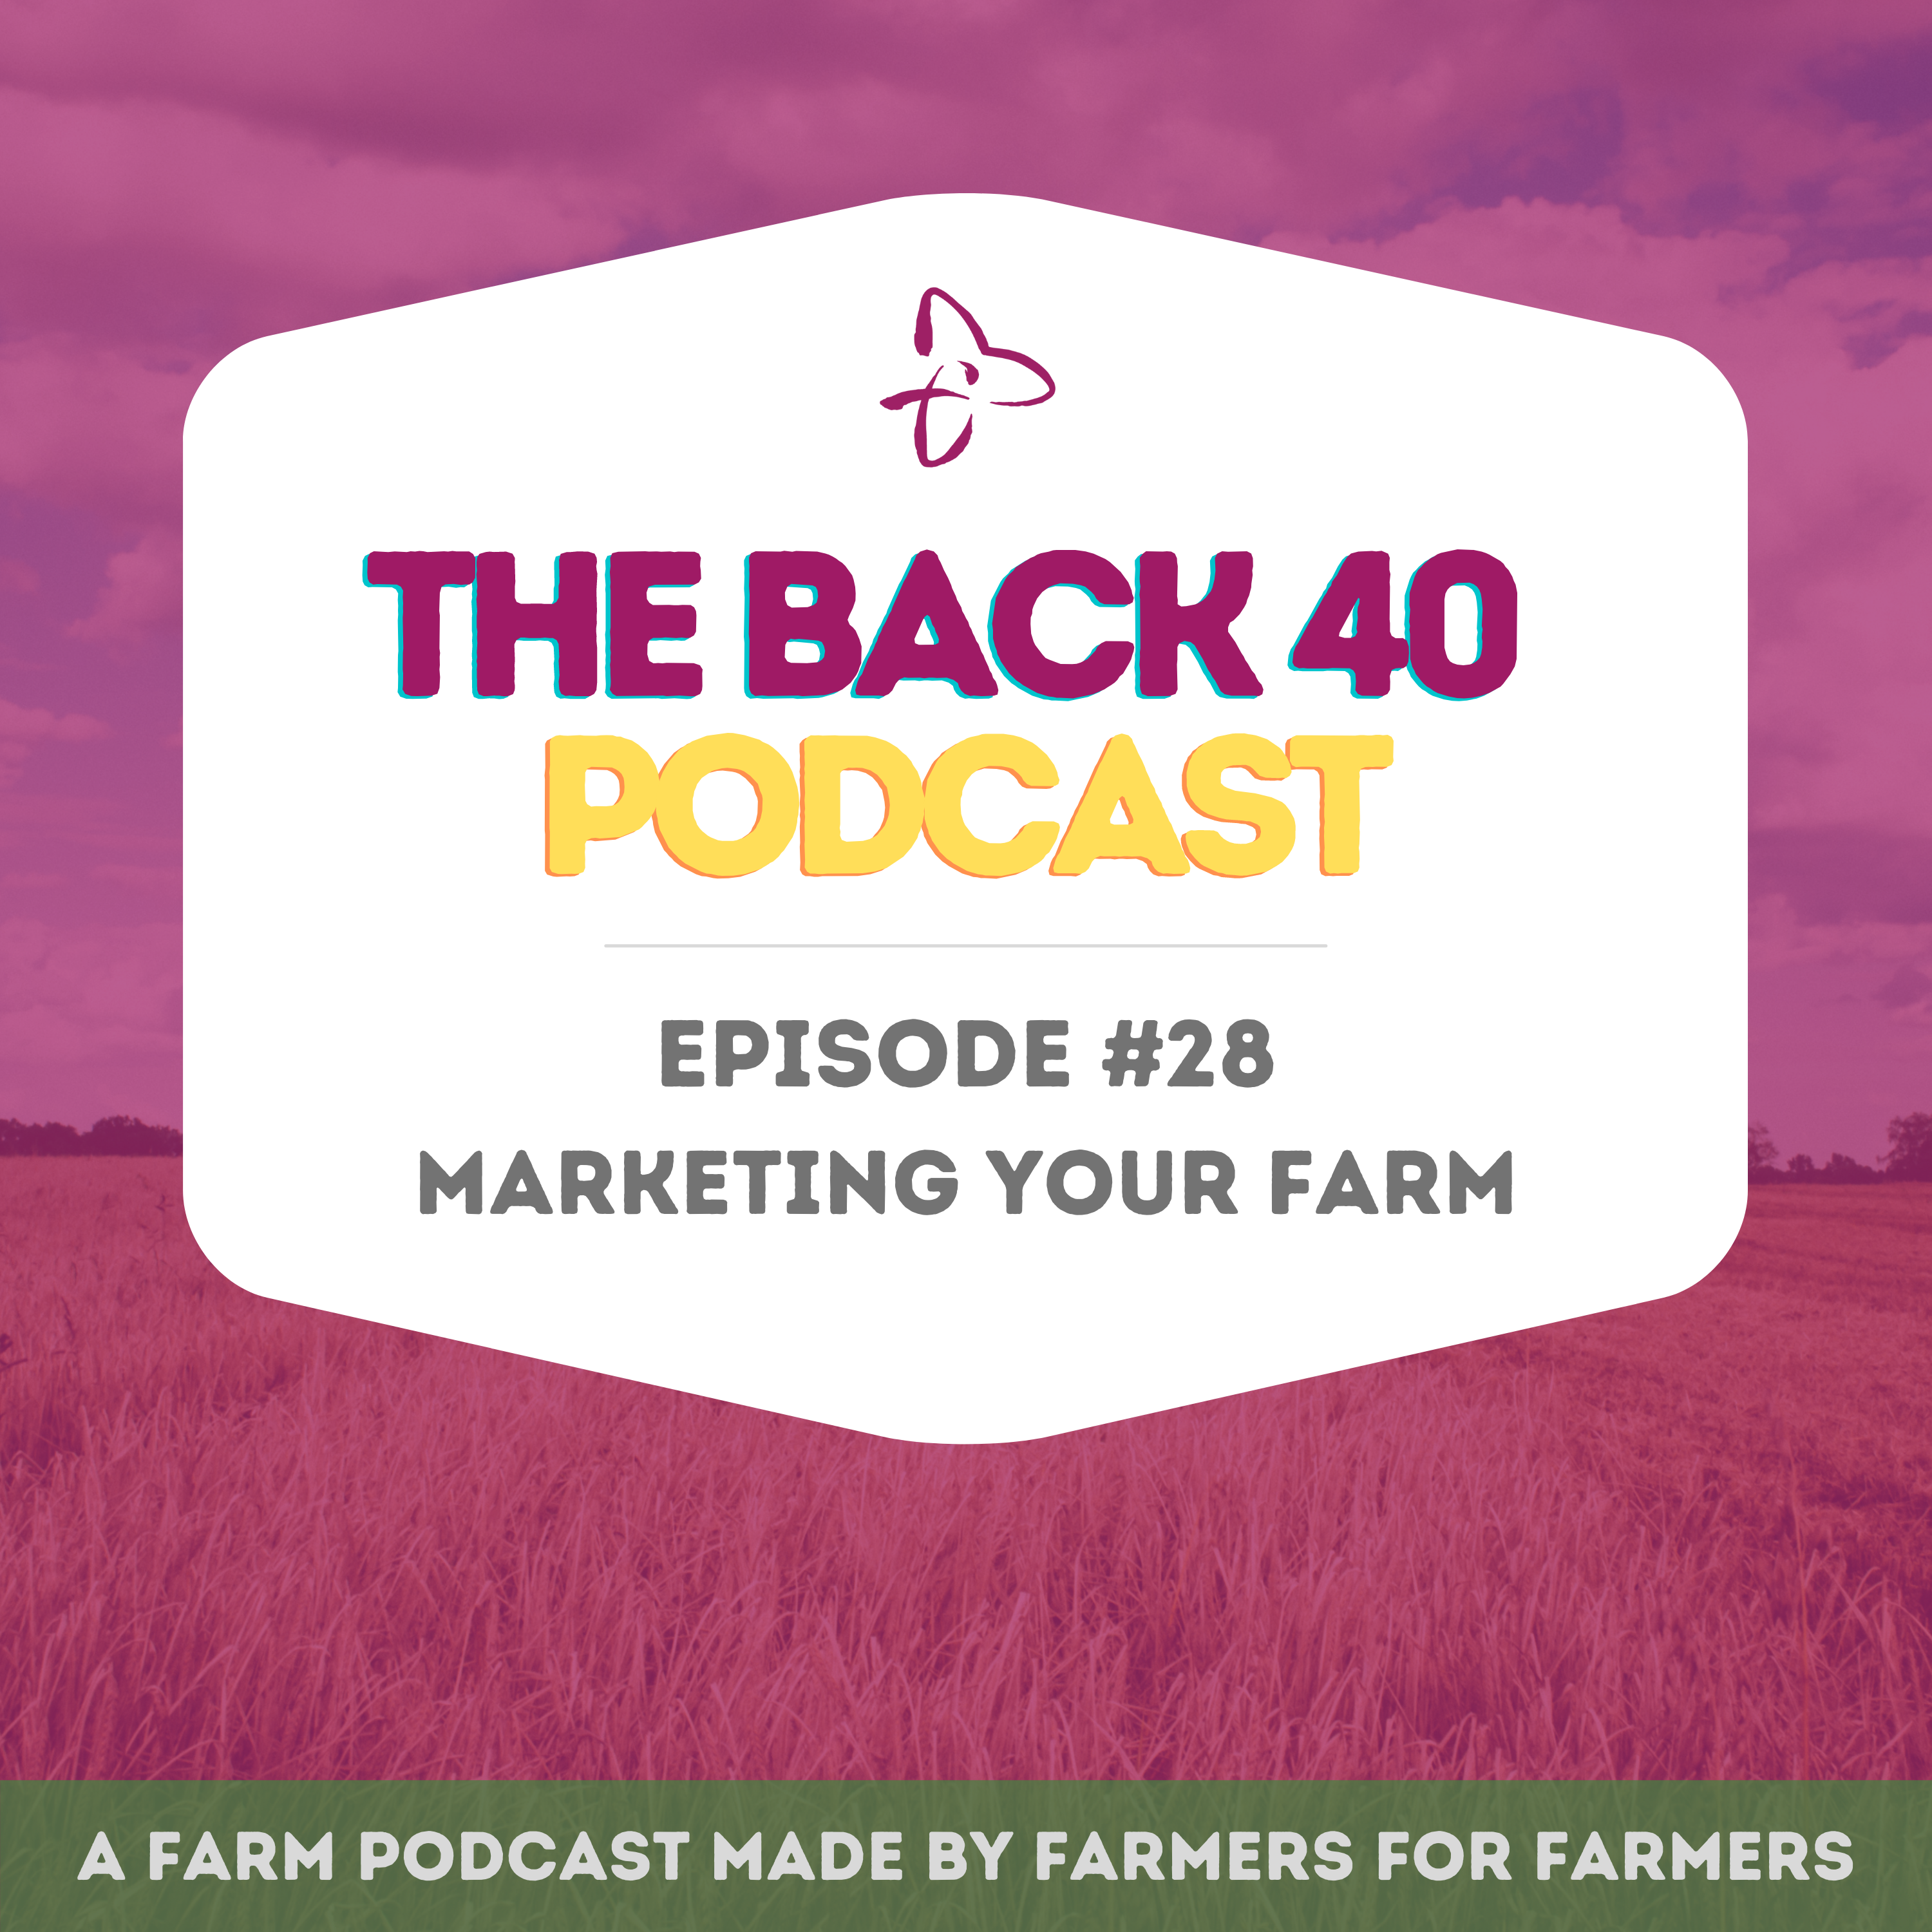 Marketing Your Farm